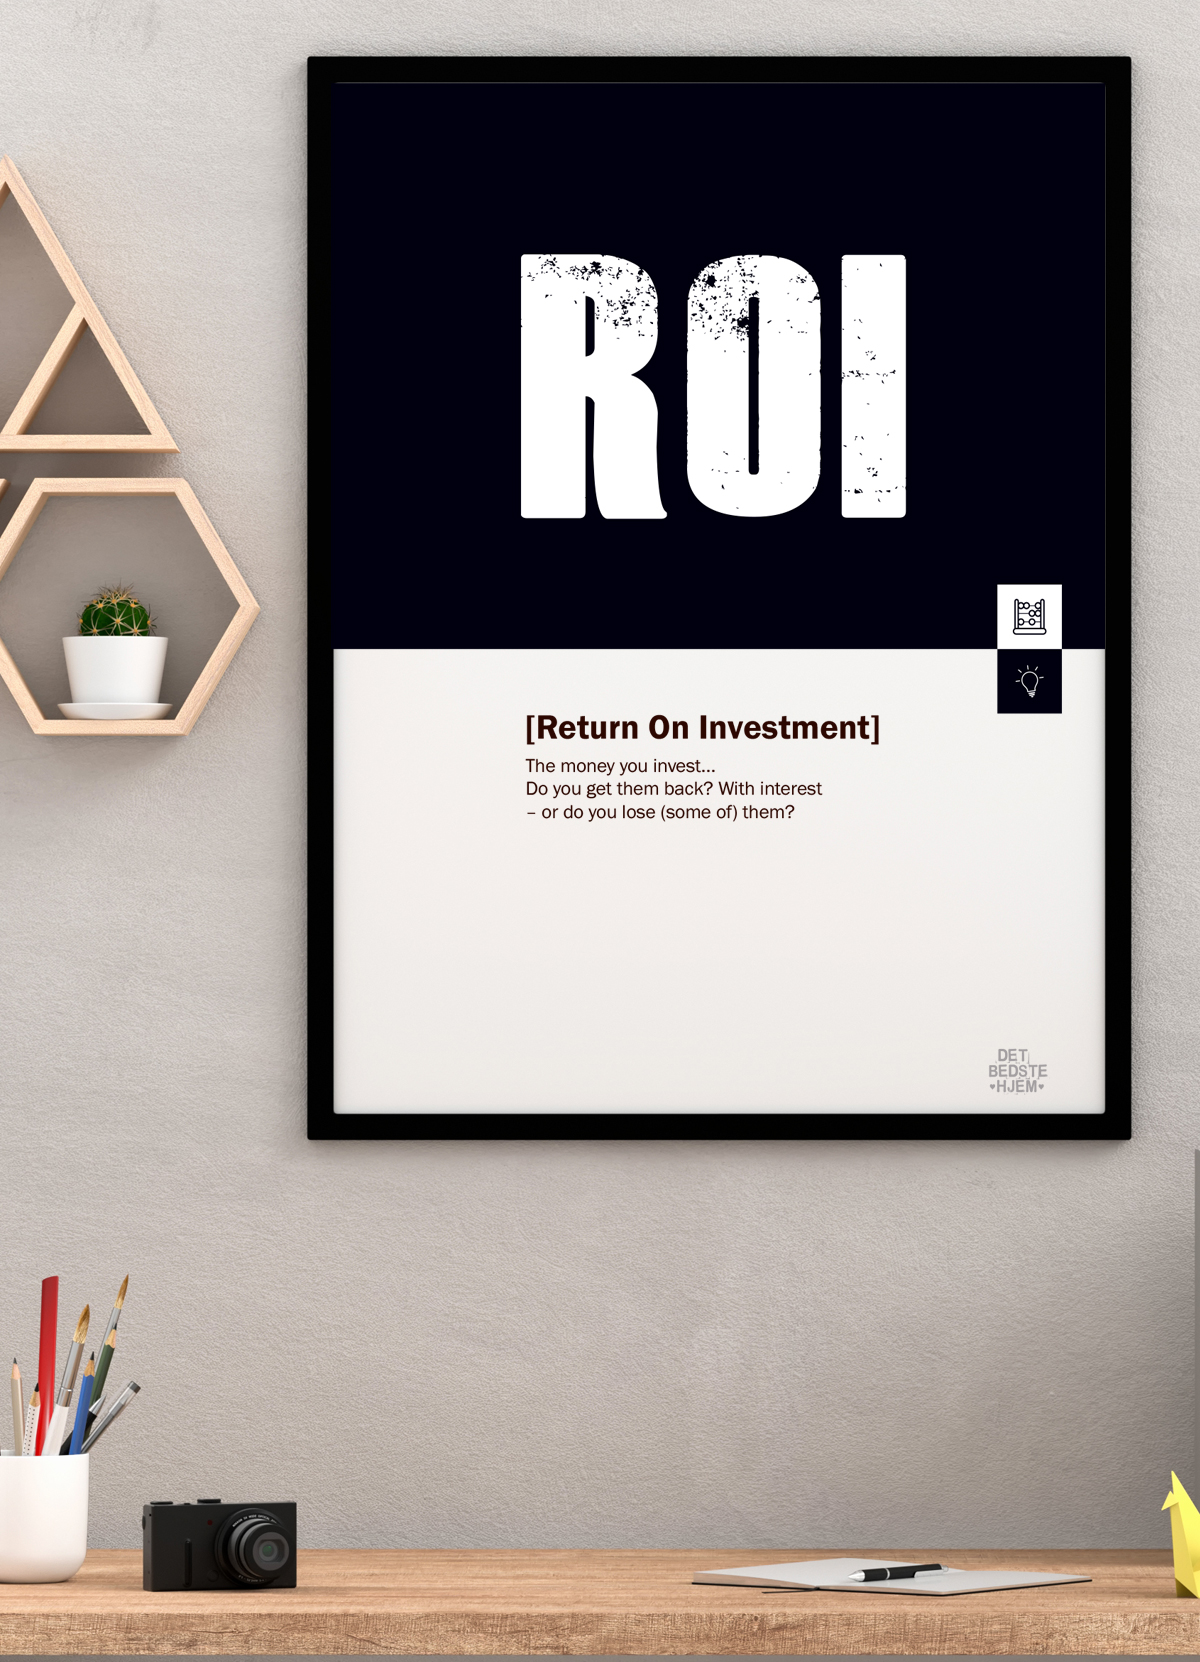 Se ROI-marketing-plakat - Download PDF og print selv i mange formater kr. 299 hos Detbedstehjem.dk